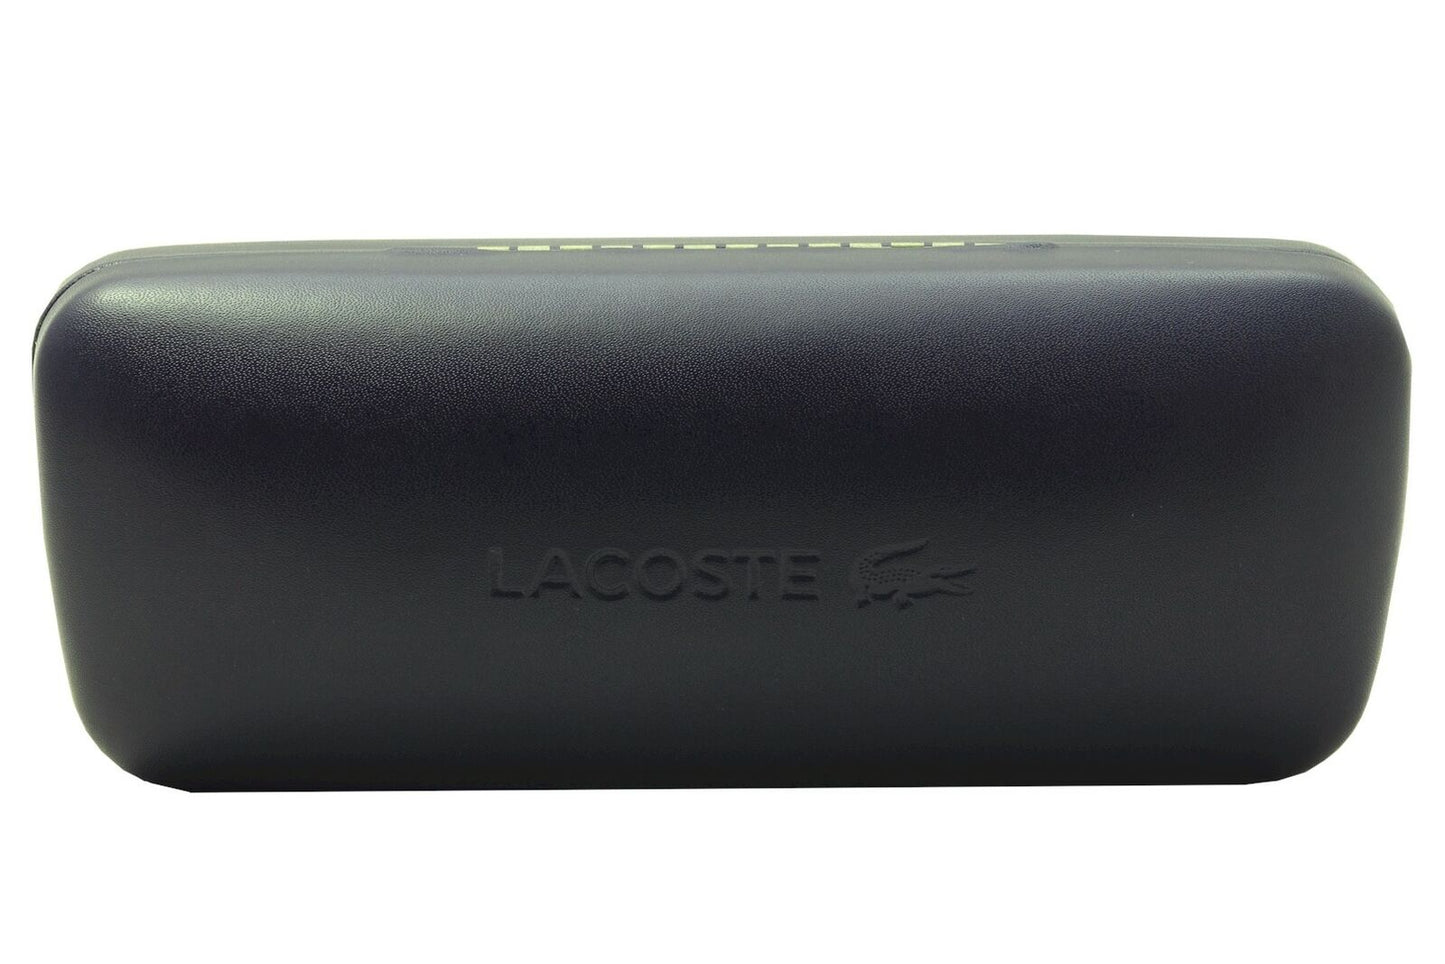 Lacoste L971S-662-52 52mm New Sunglasses